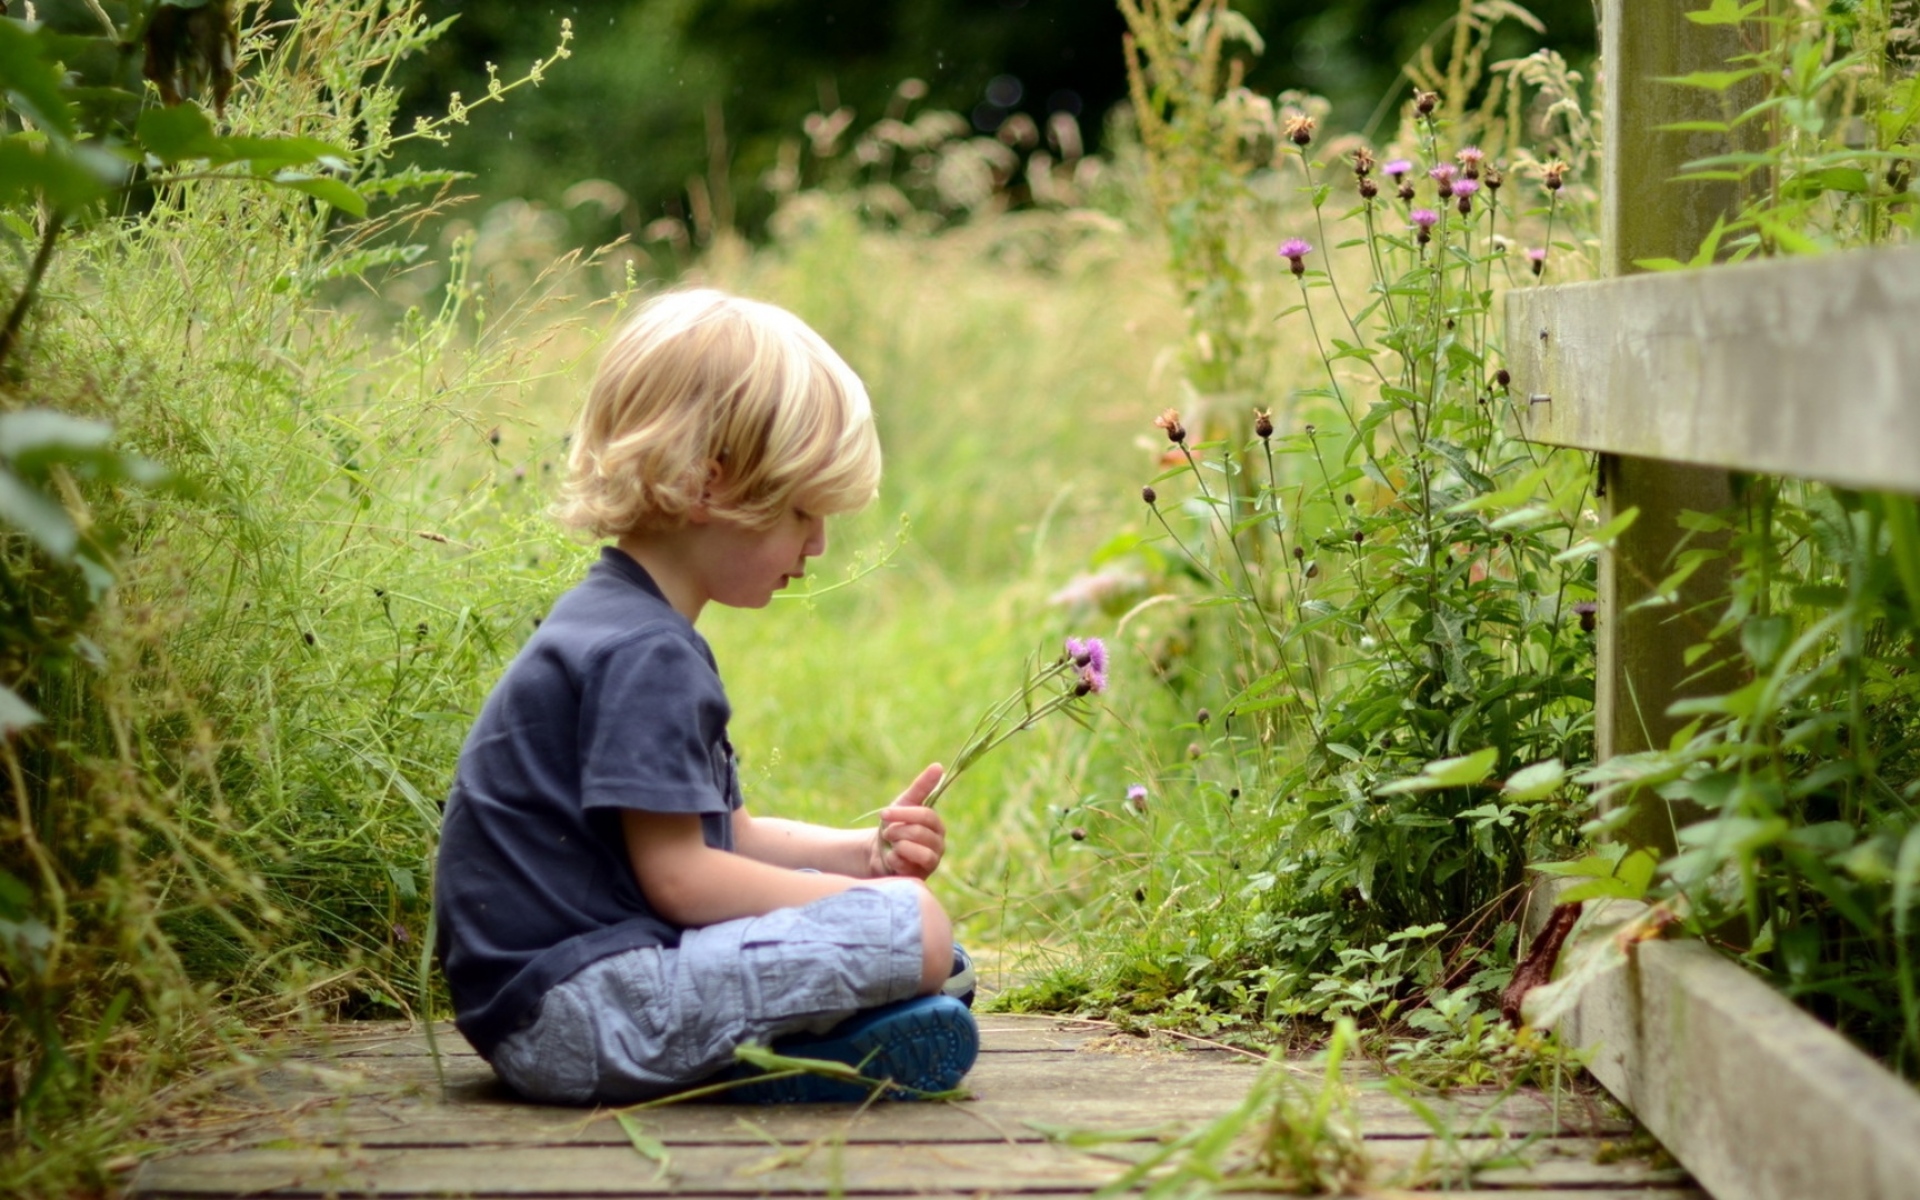 И сам не меньше мальчика. Мальчик на природе. Дети и природа. Мальчик сидит на траве. Мальчик на лужайке.